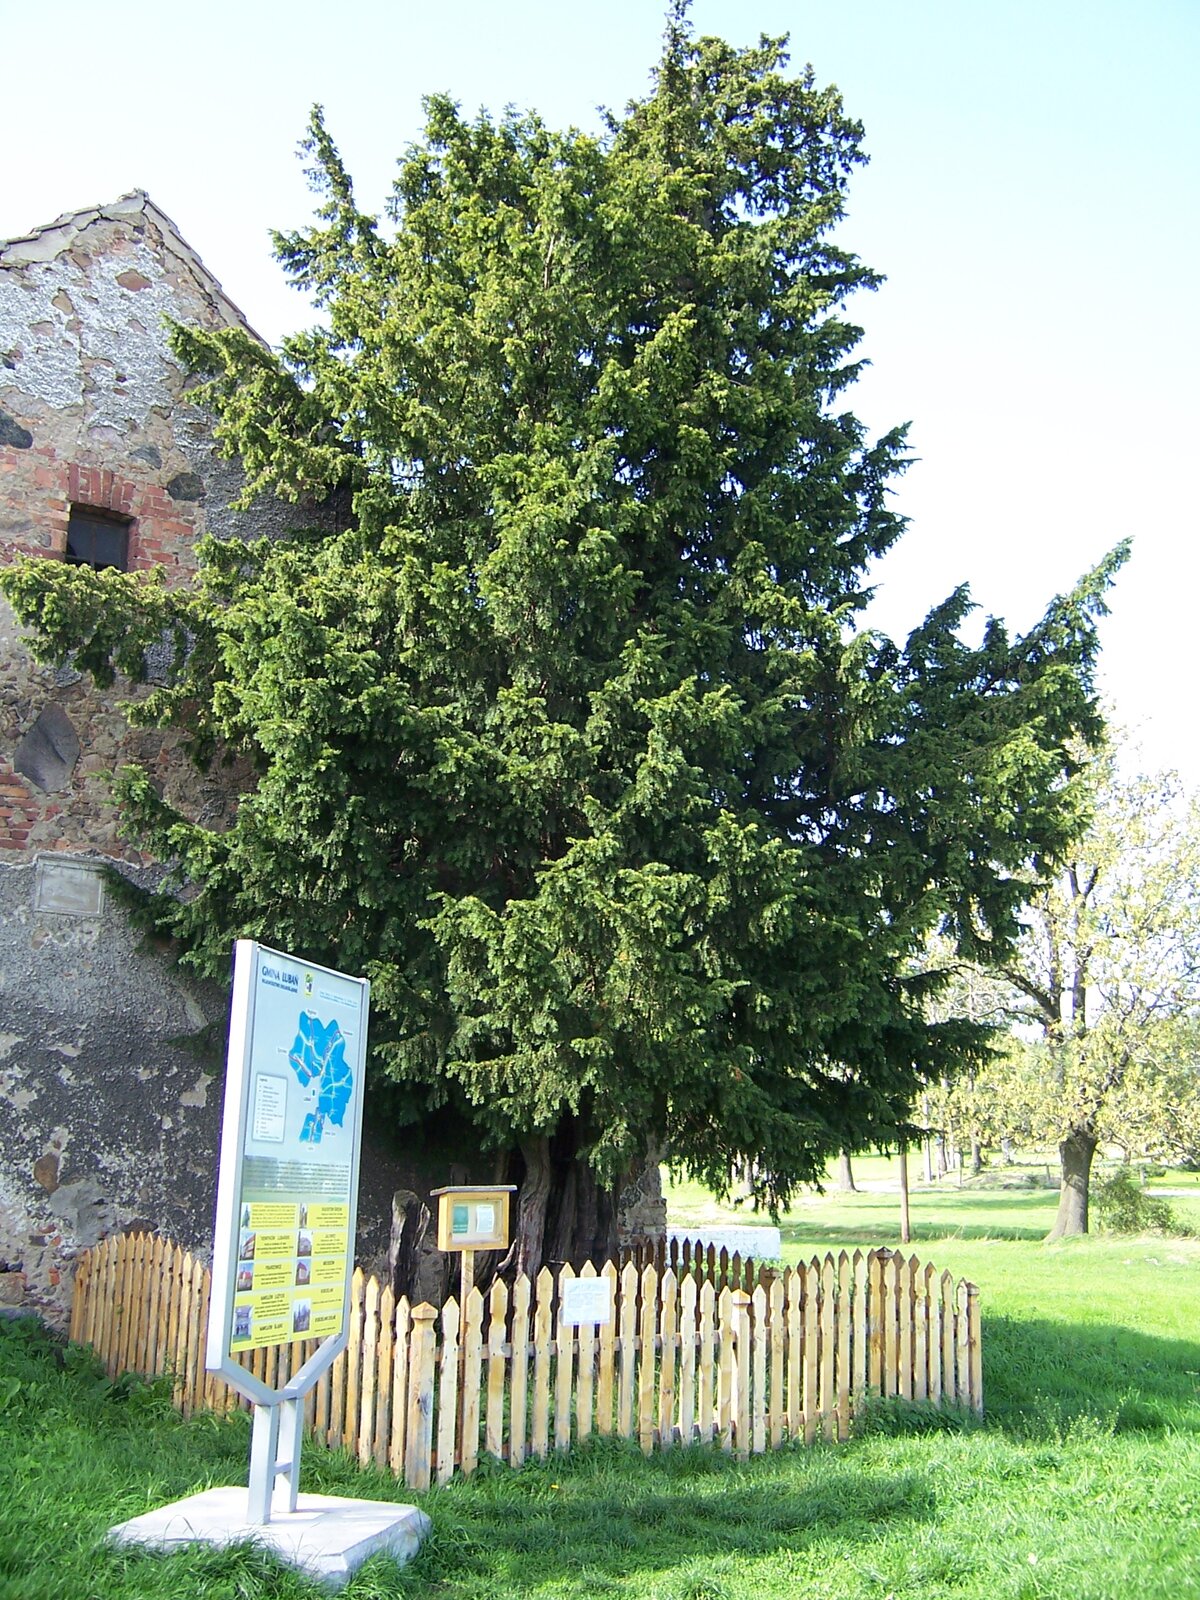 Fotografia przedstawia drzewo, stojące z płotkiem przy murze budynku. Przed nim tablica informacyjna. Jest to najstarsze w Polsce drzewo, cis w Henrykowie Lubańskim w województwie dolnośląskim.